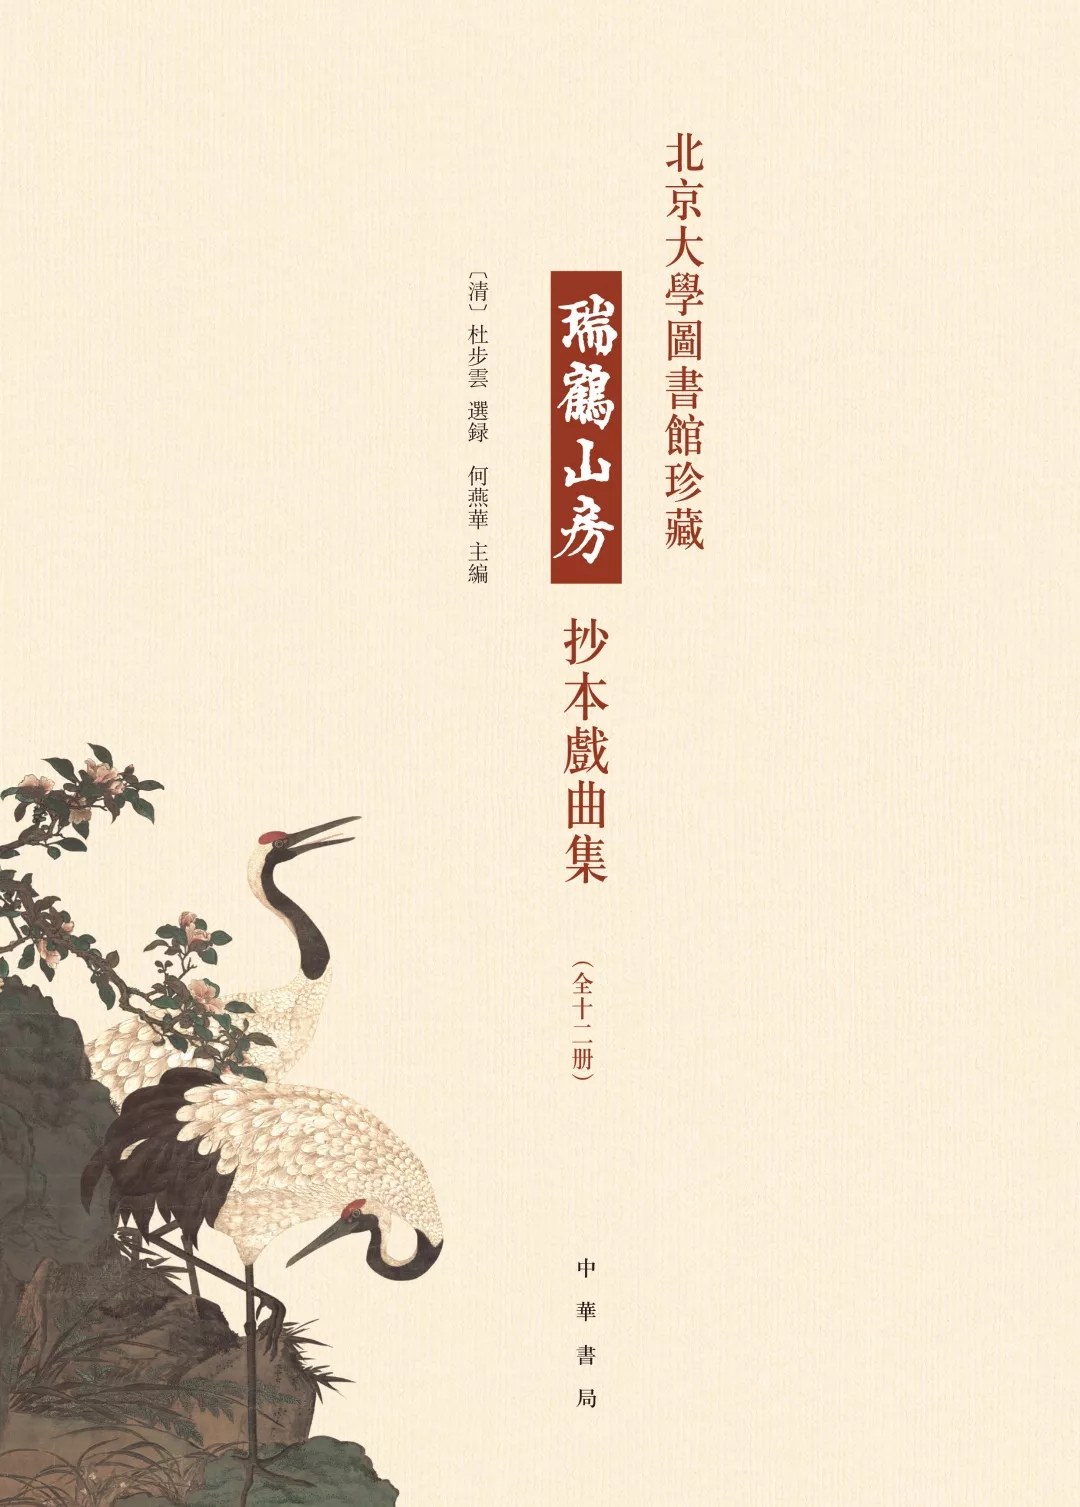 北京大学图书馆珍藏瑞鹤山房抄本戏曲集 第九册